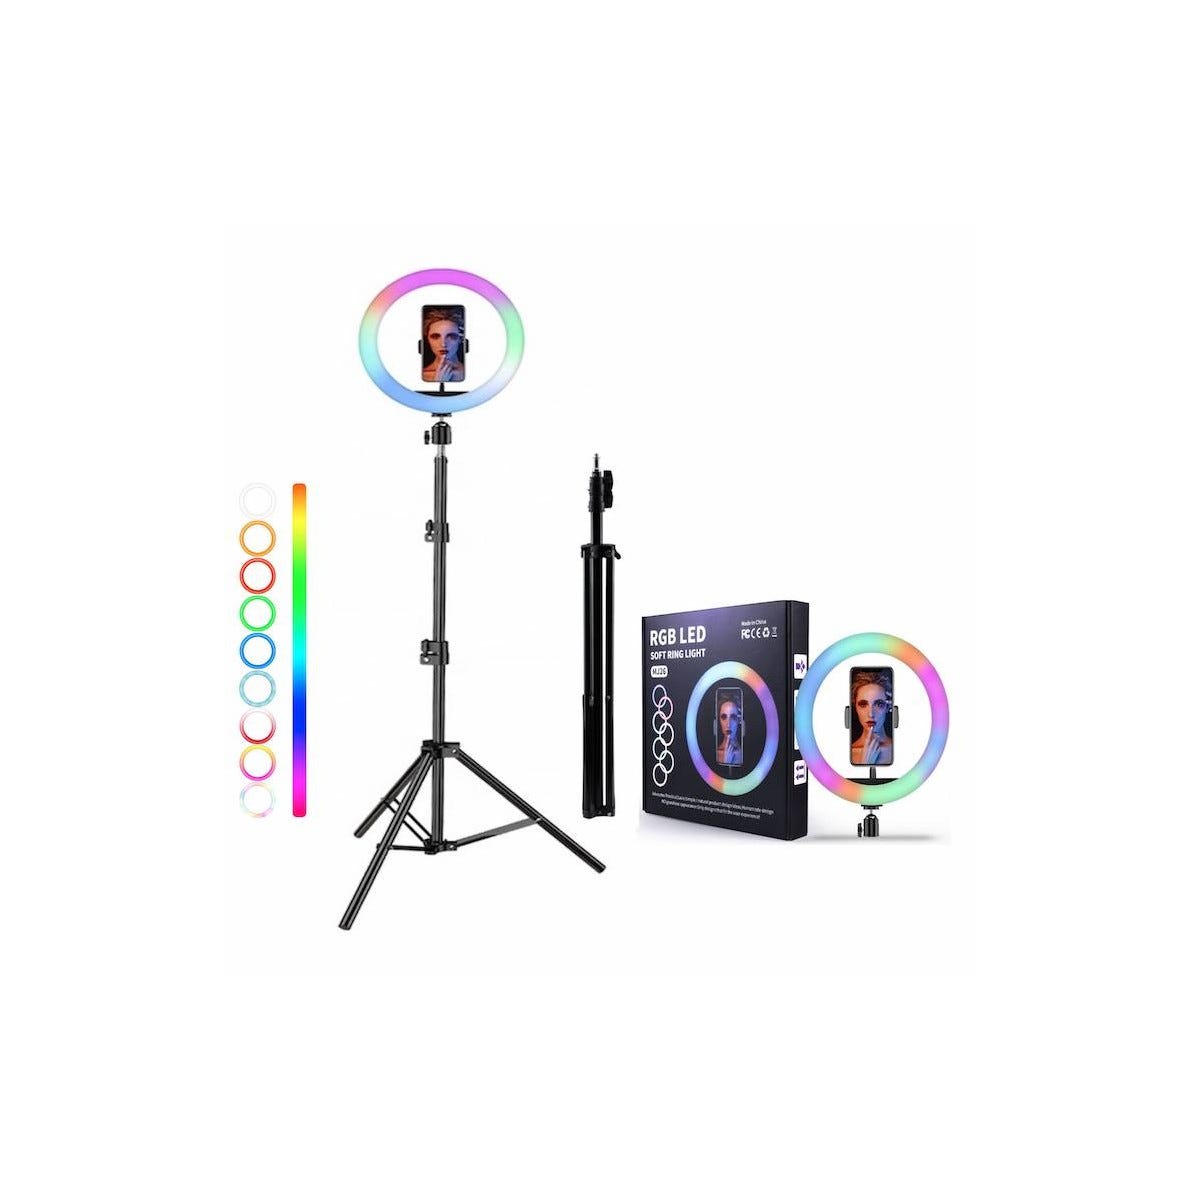 Aro de Luz LED Regulable 6 con Trípode, Soporte para Móvil y Funciones para  Fotografía, Maquillaje, Selfies,  y Streaming en Vivo